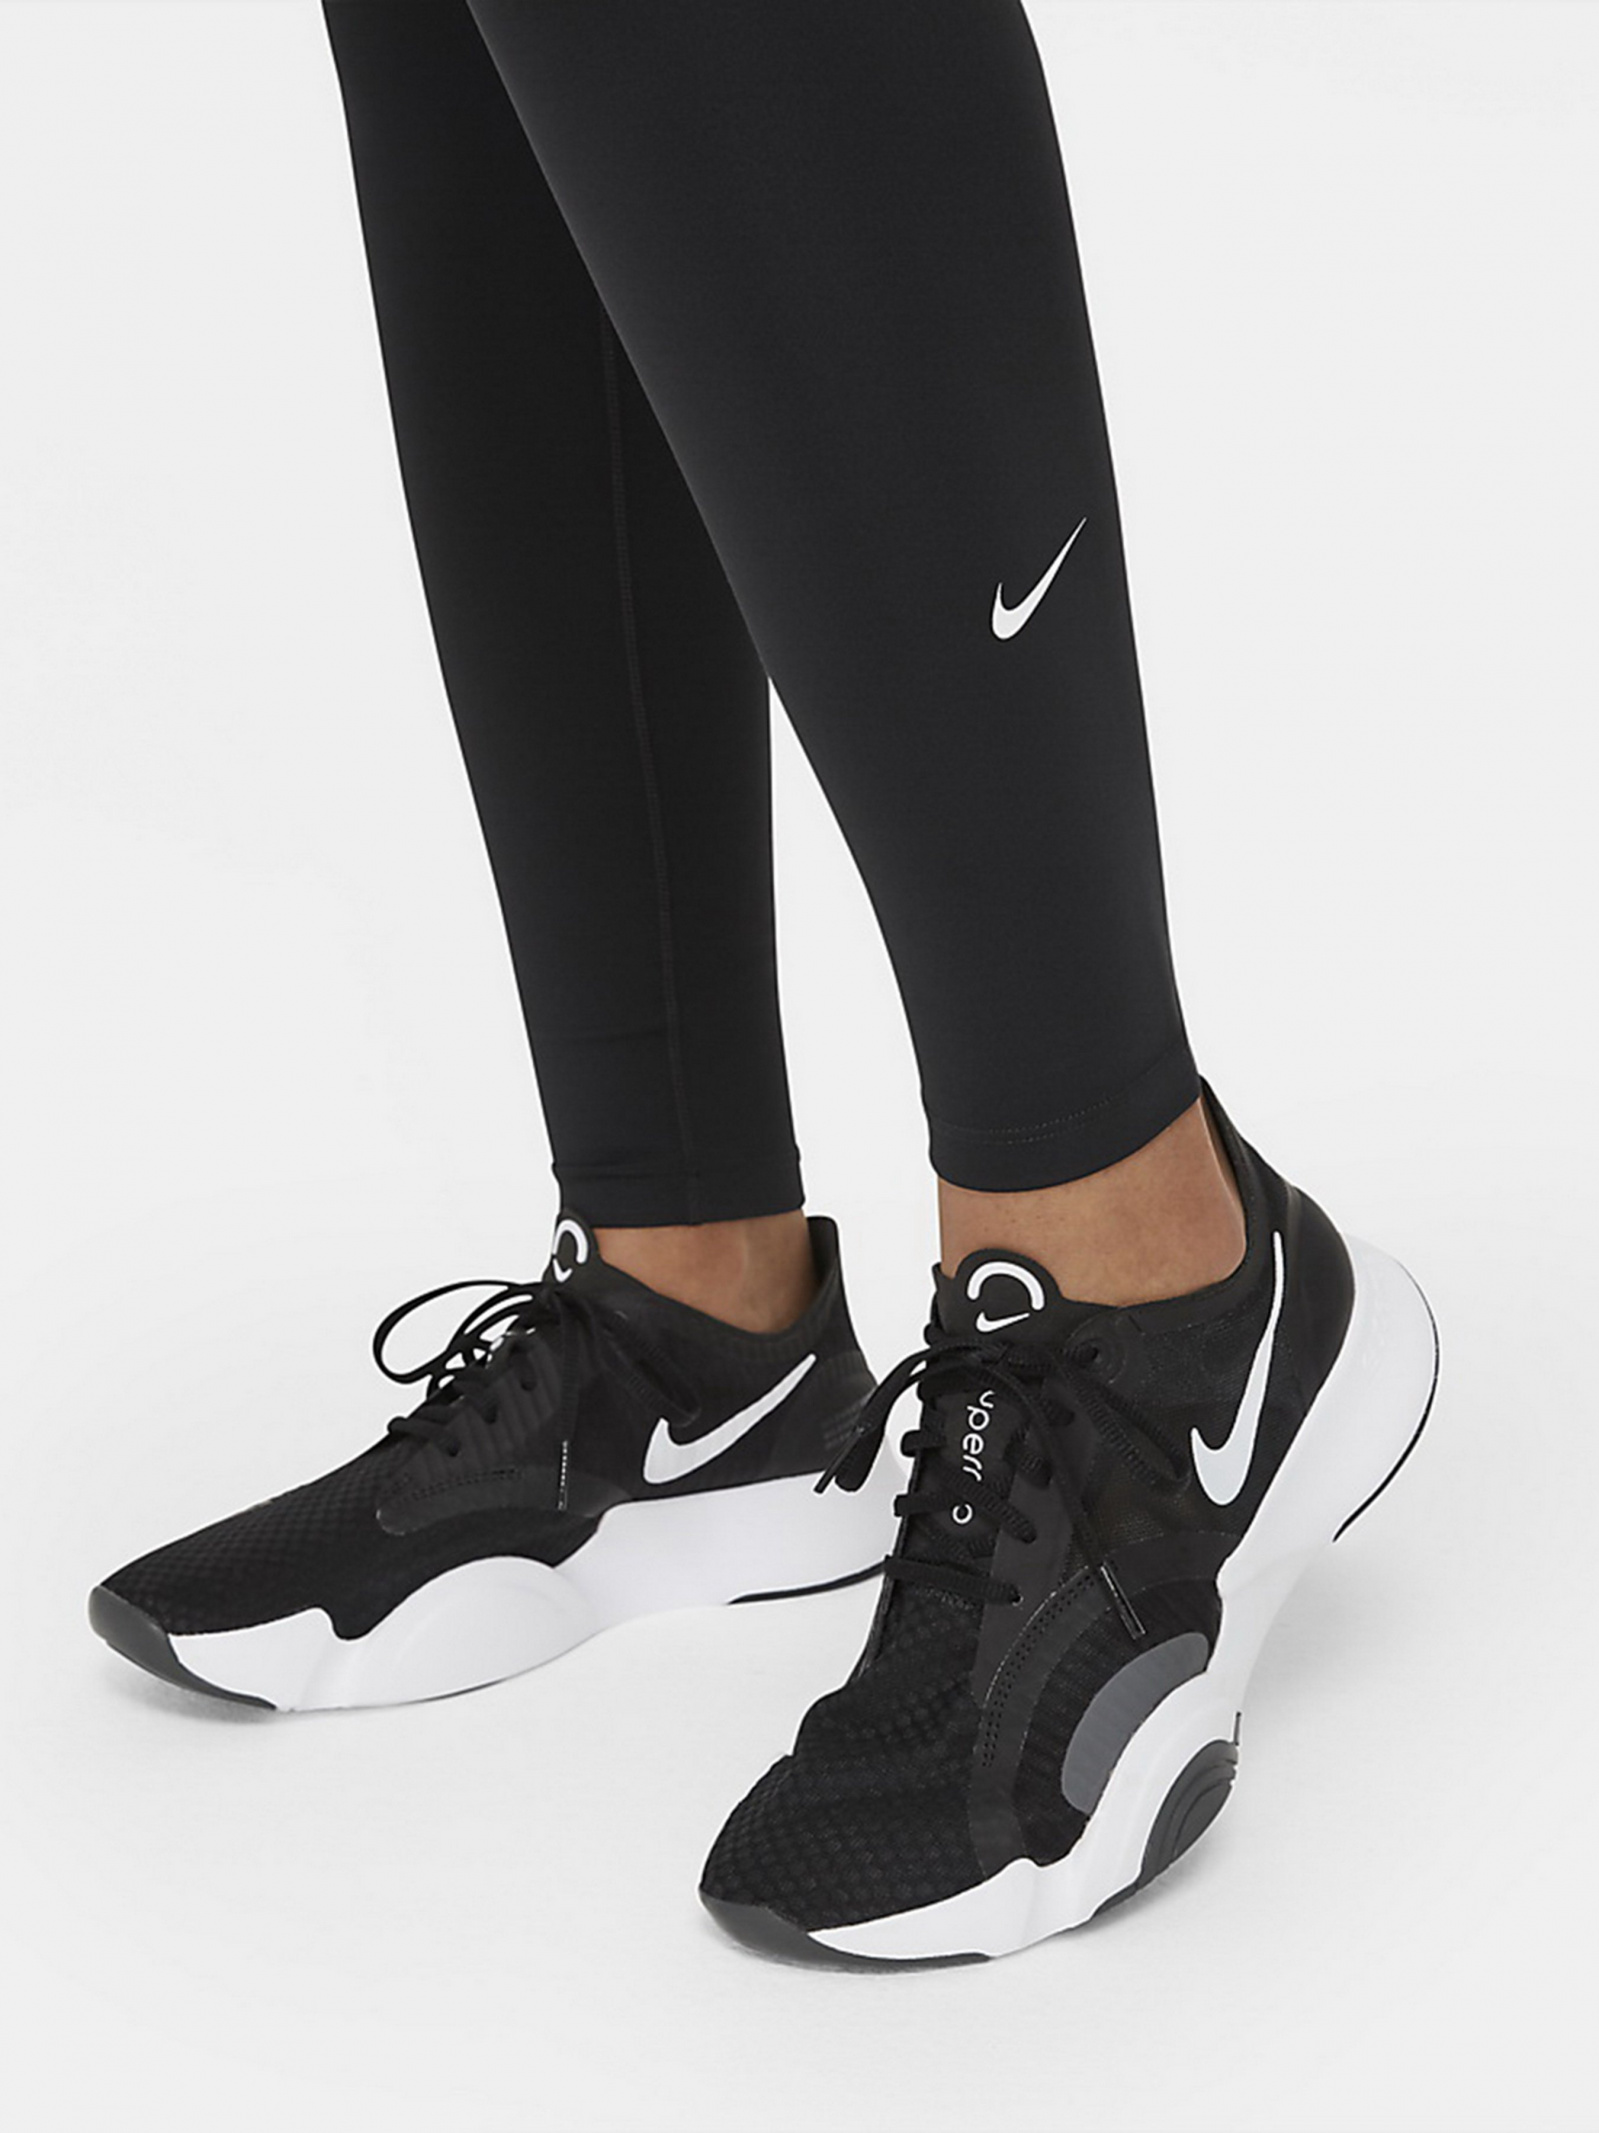 Лосины спортивные женские Nike ONE DF MR TGT черные DD0252-010 - купить на  Football-World